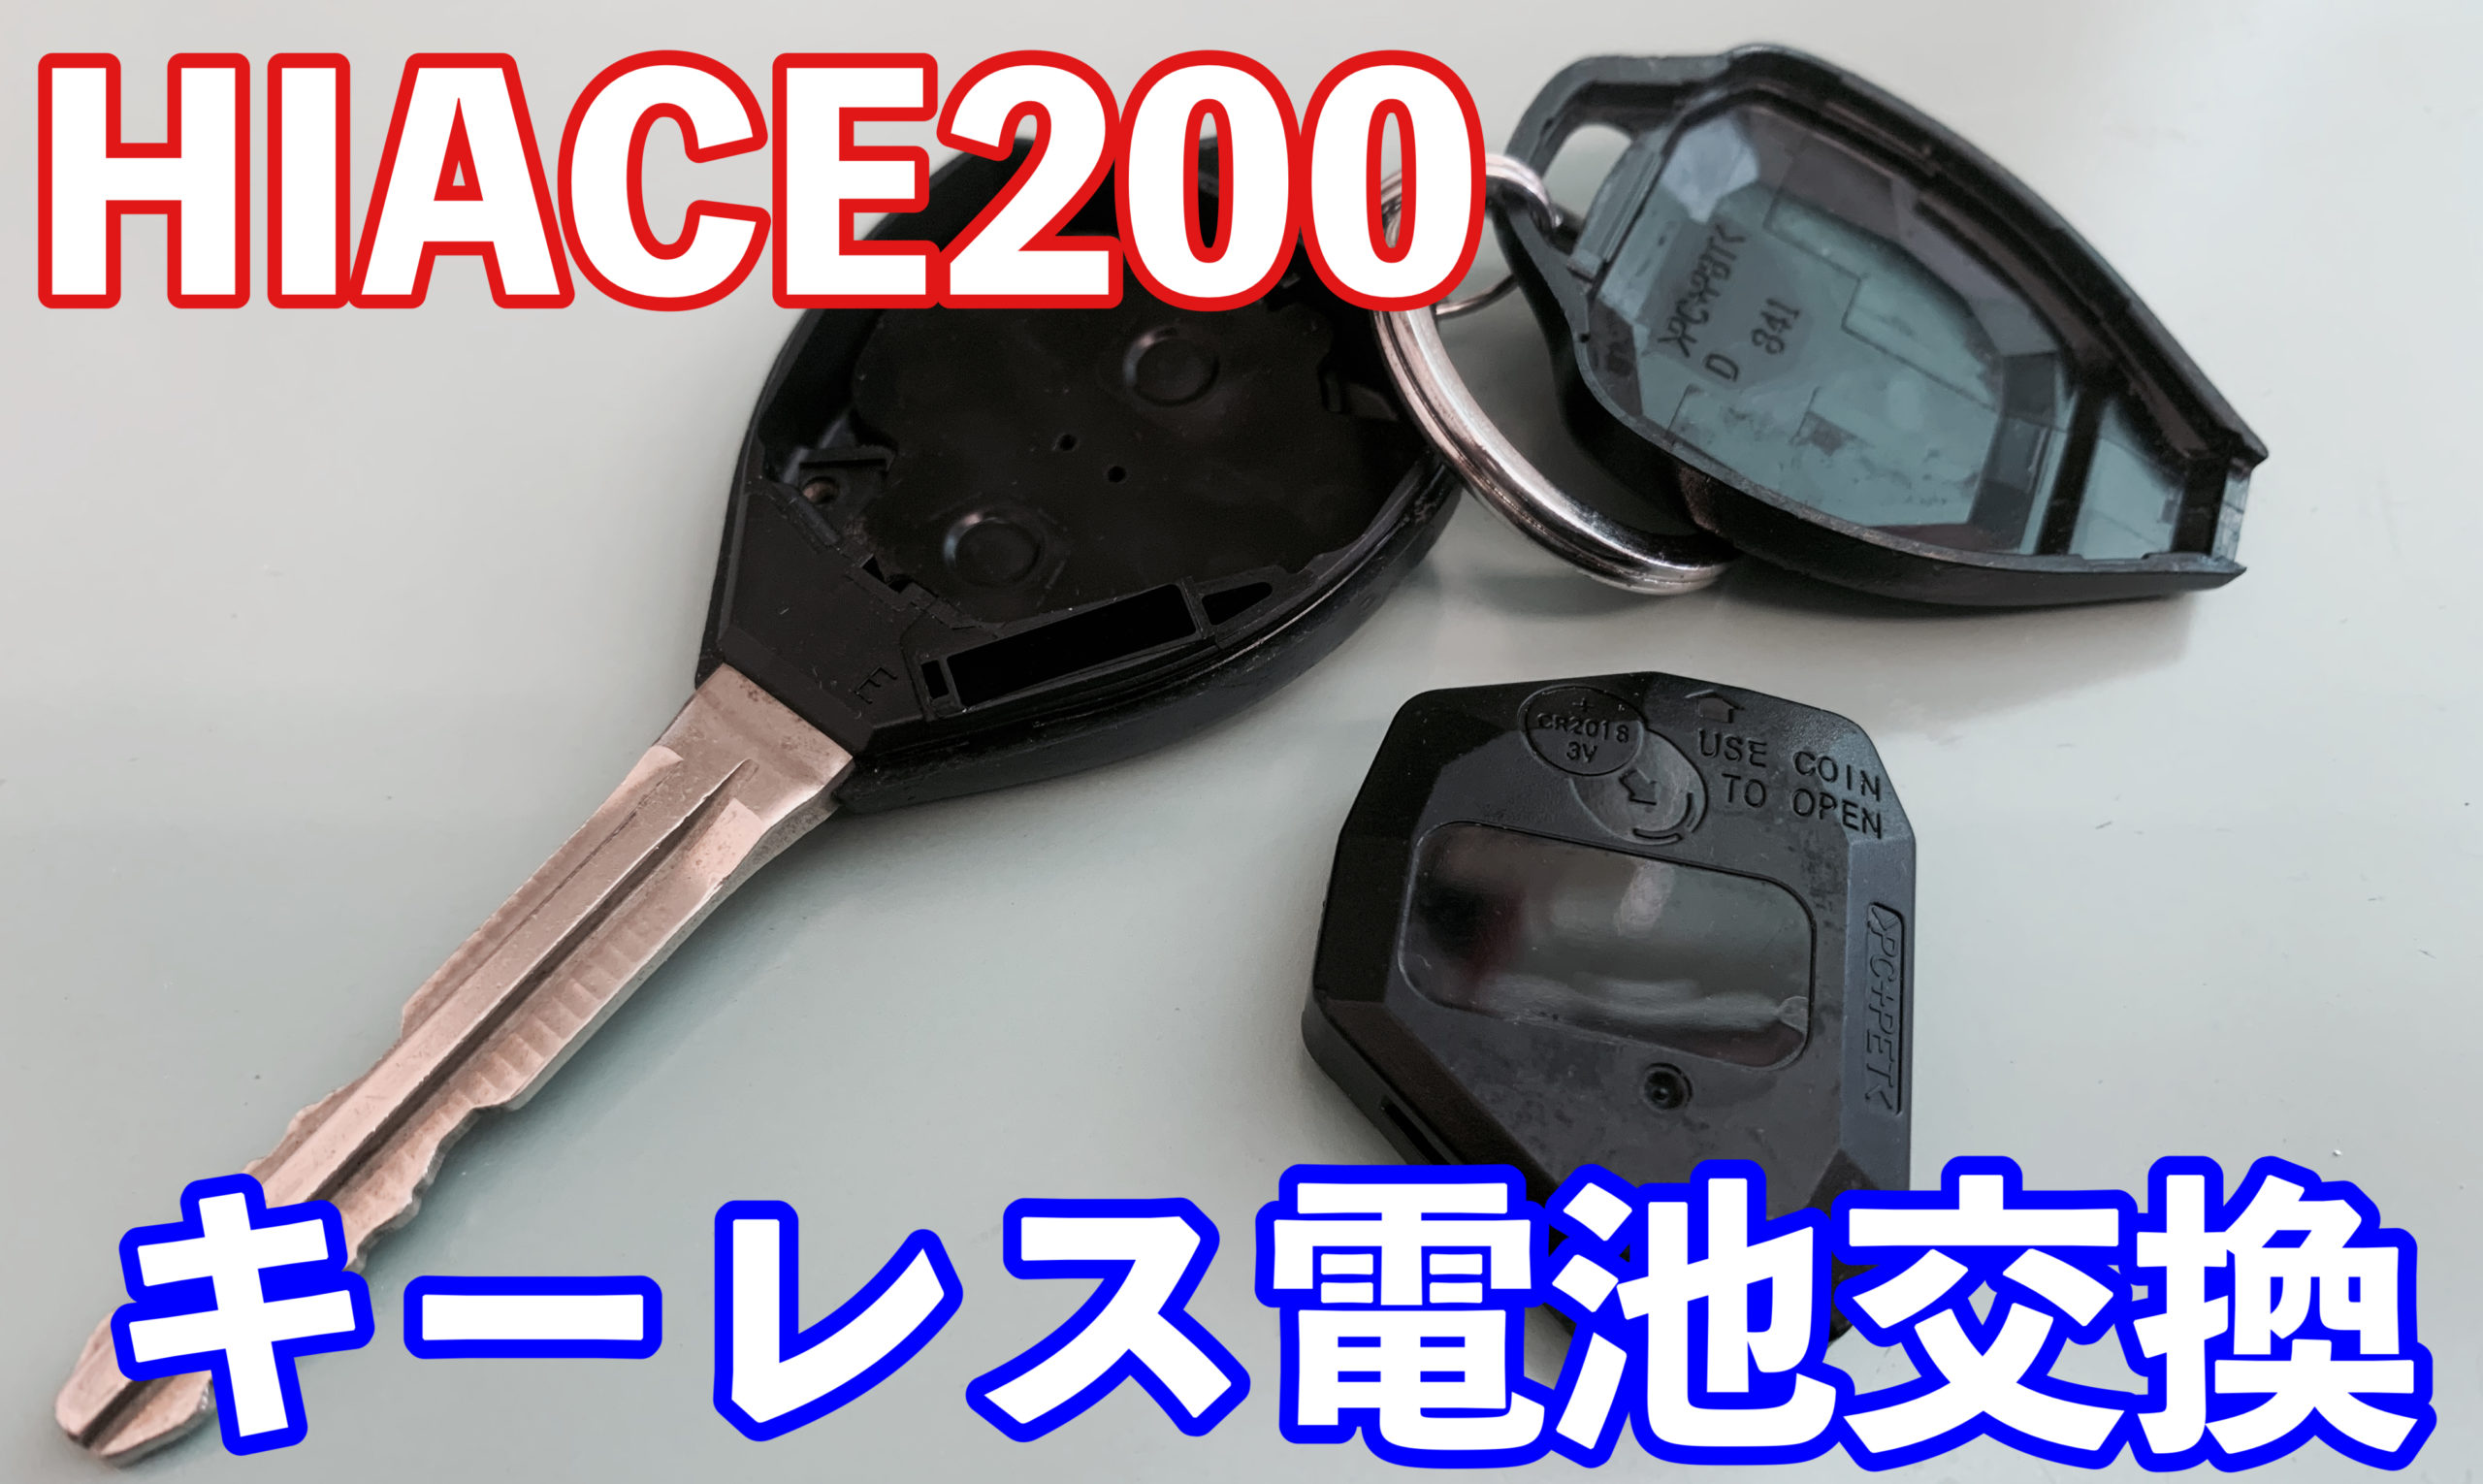 HIACE 200系】純正キーレスの電池交換方法教えます。 | M channel blog 